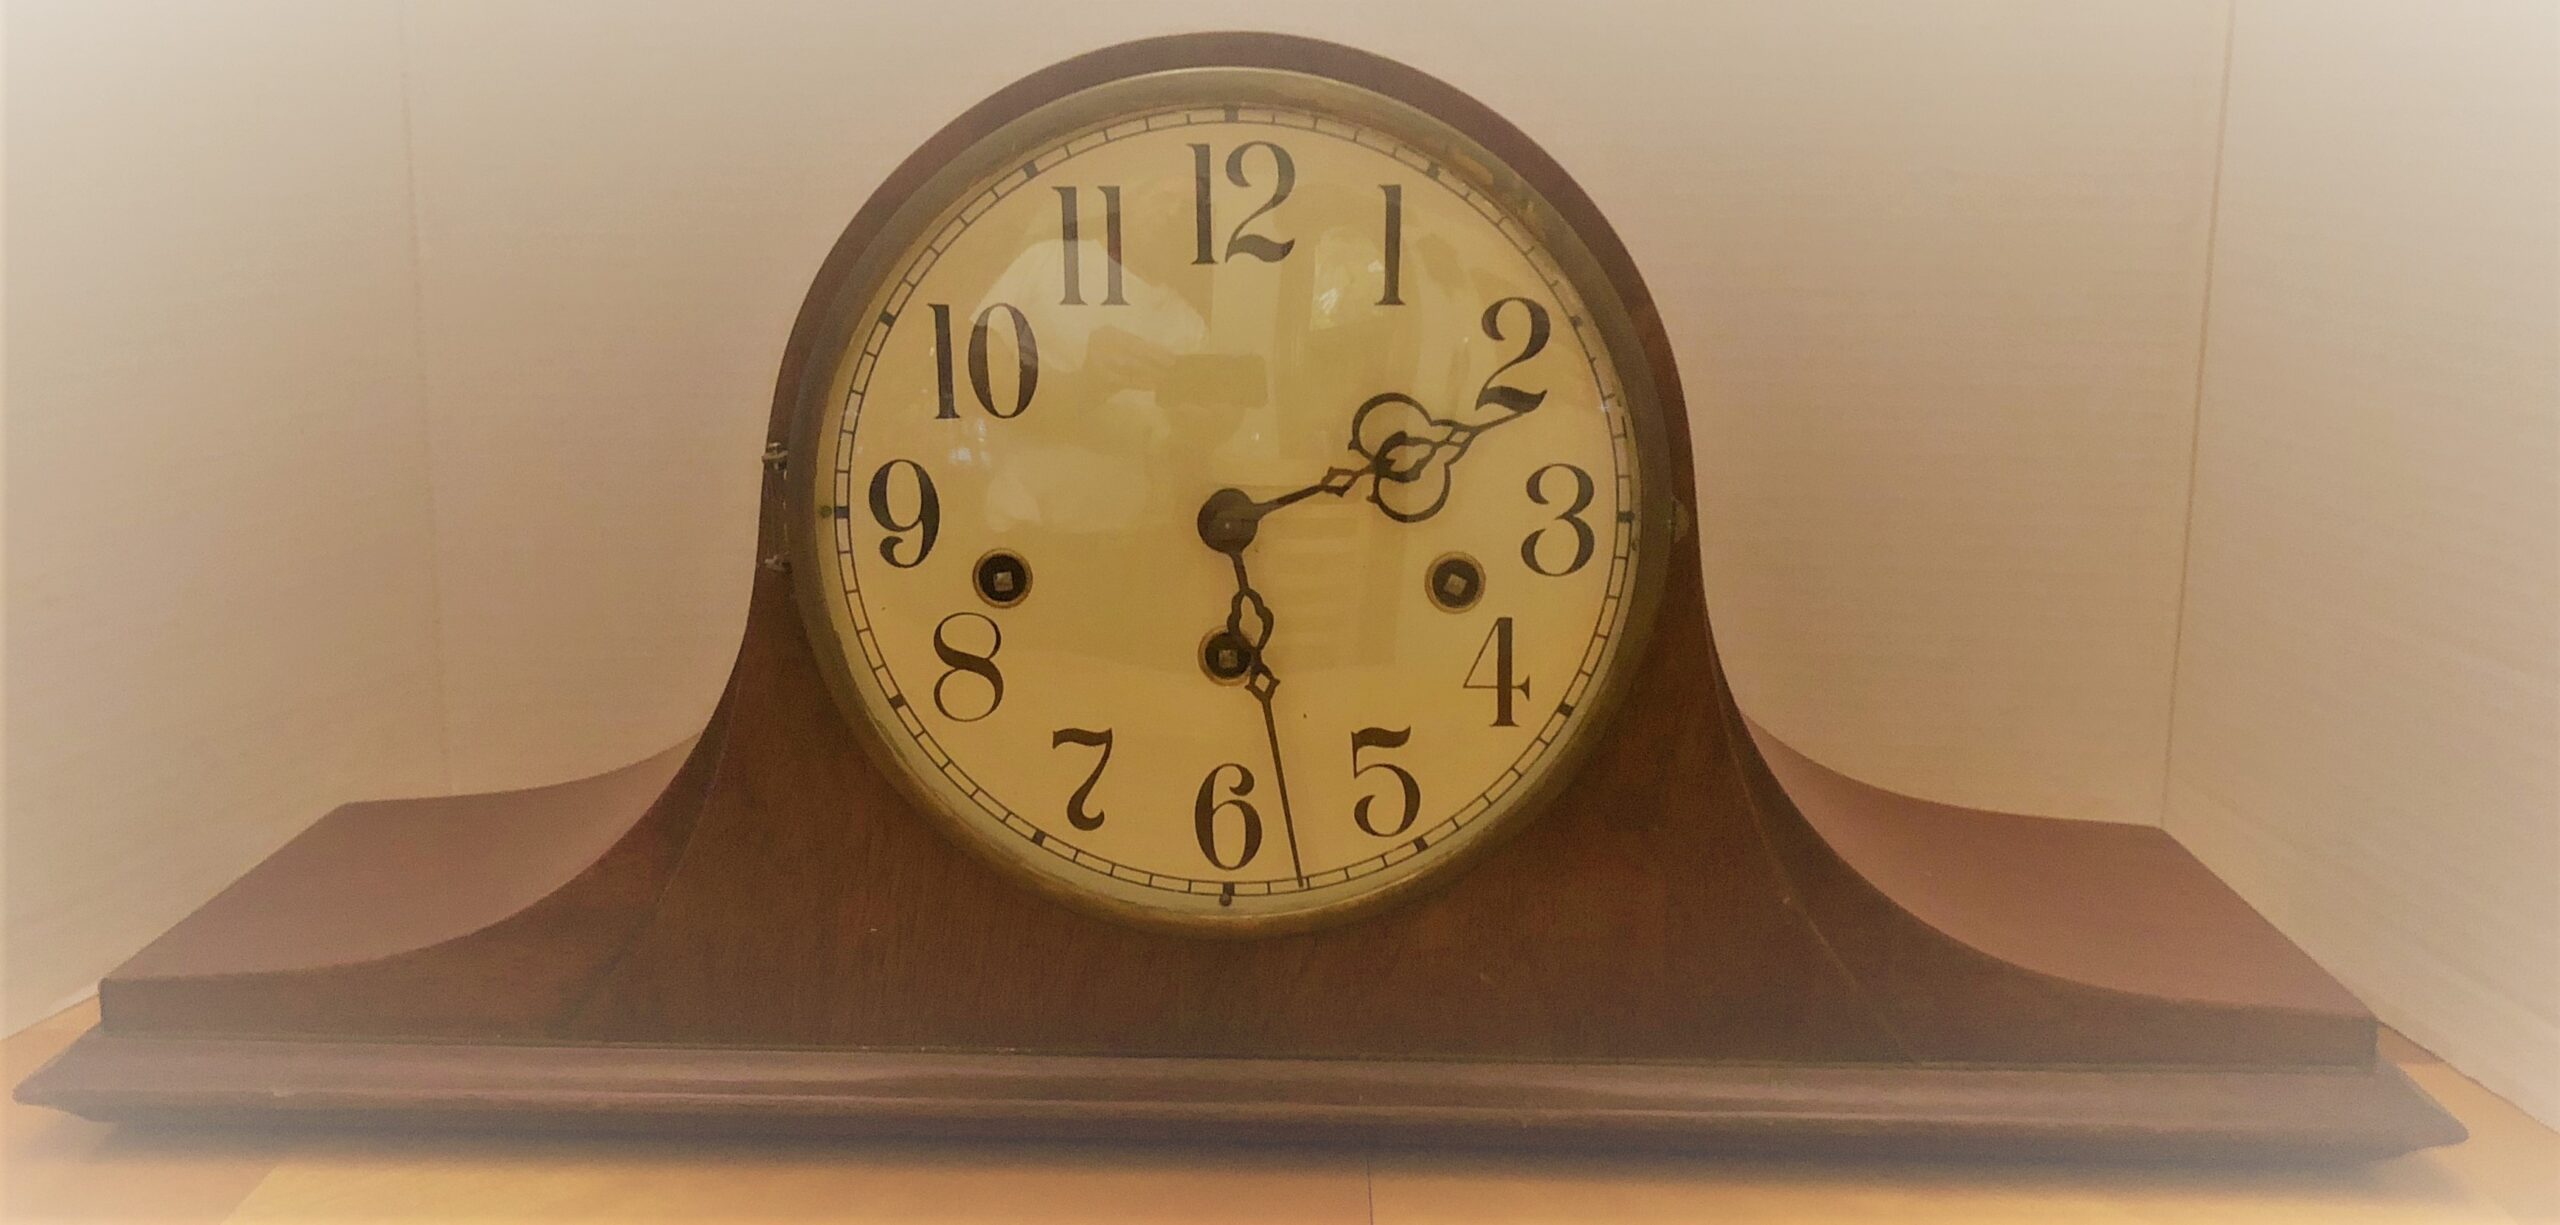 Humpback vintage clock